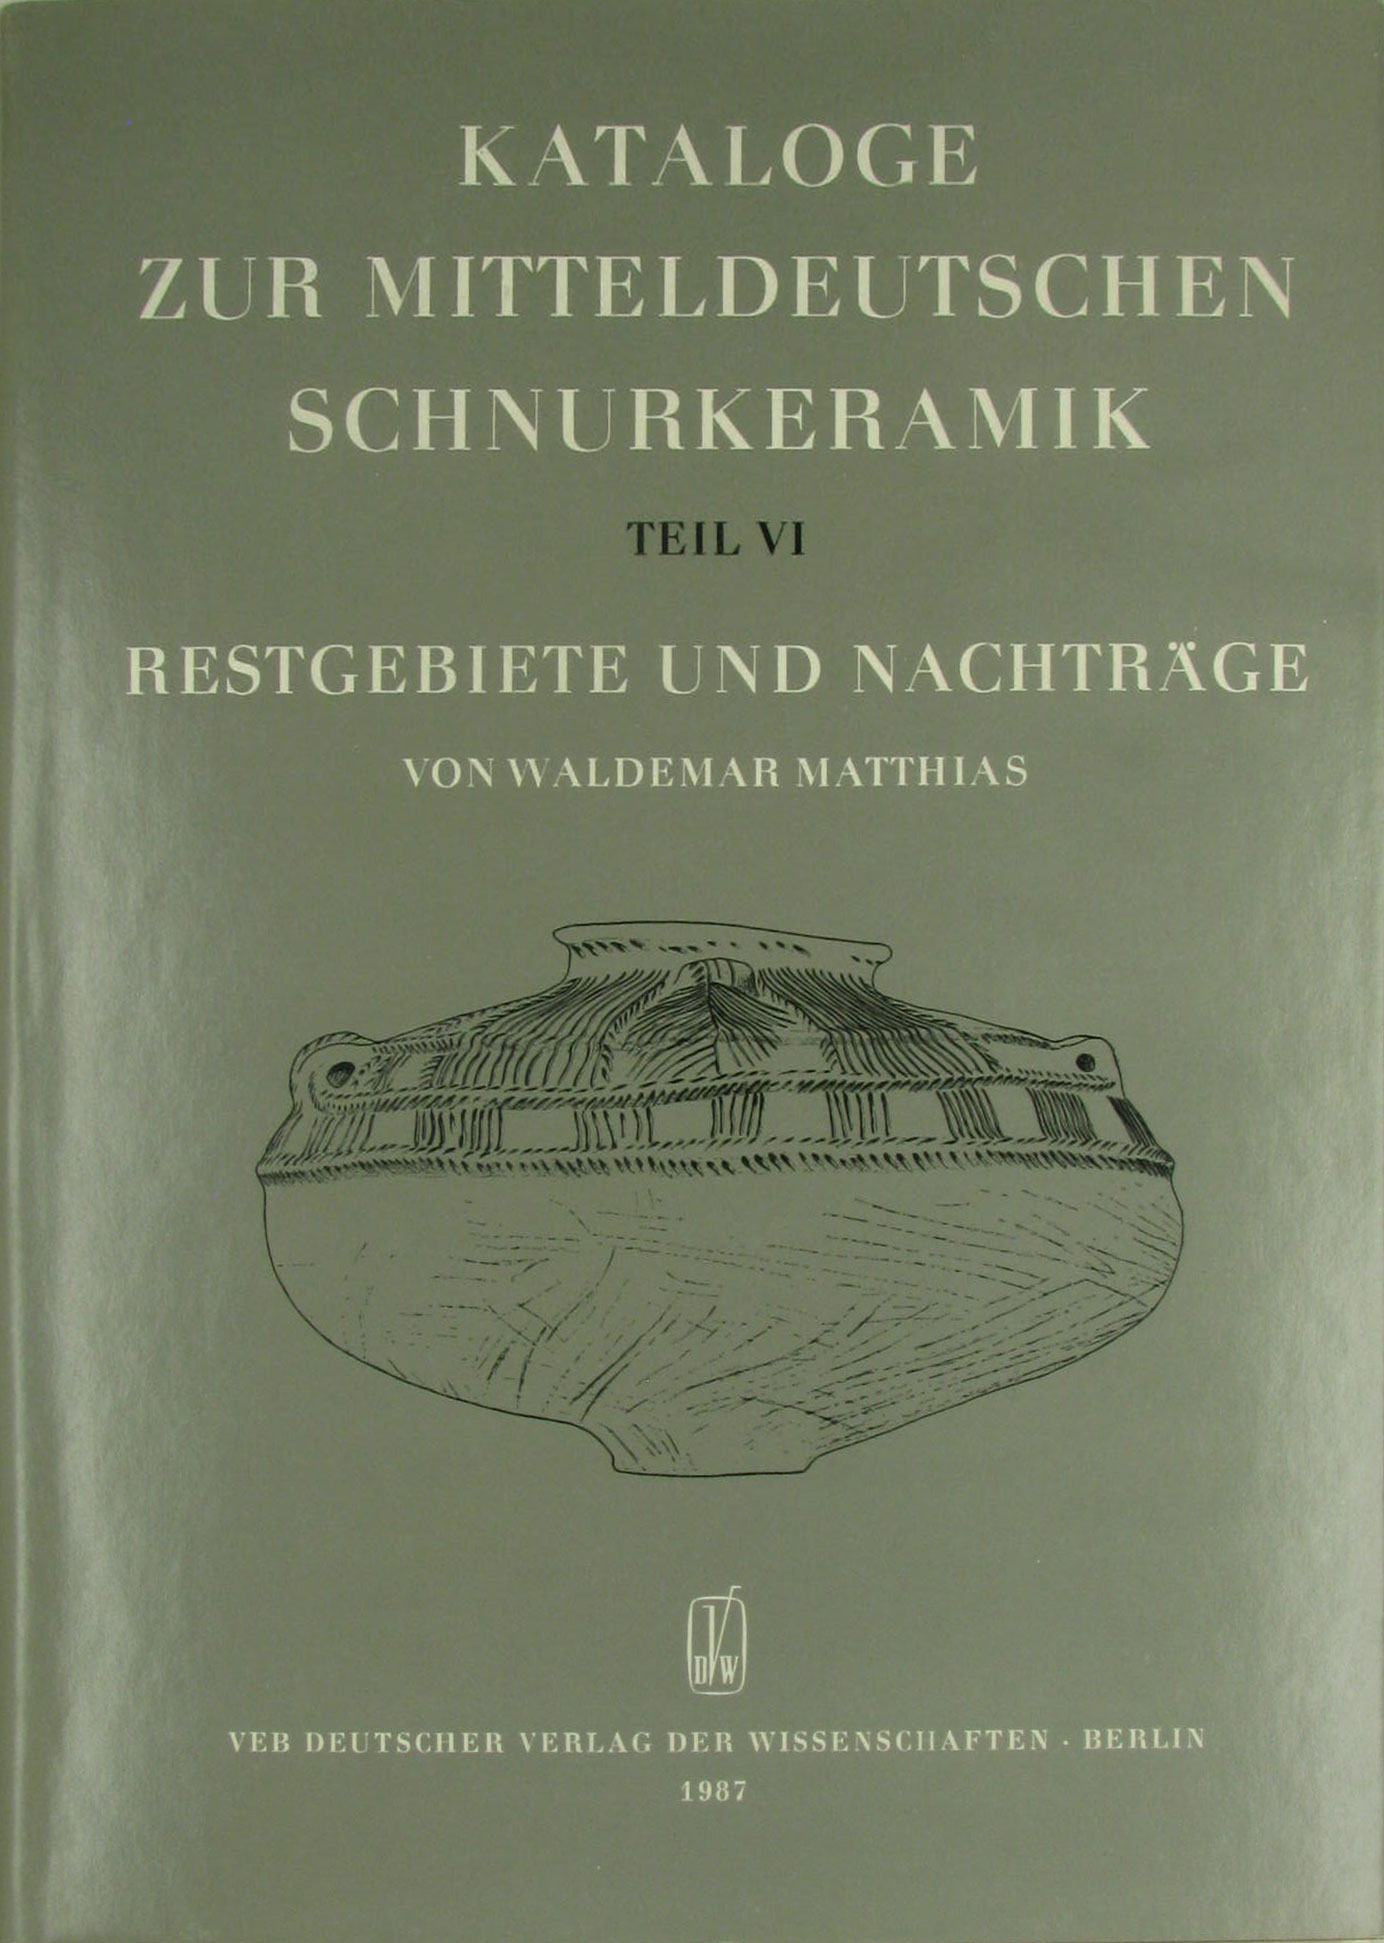 Kataloge zur mittelalterlichen Schnurkeramik. Teil 6 - Restgebiete und Nachträge, - Matthias, Waldemar (Zusammenstellung)